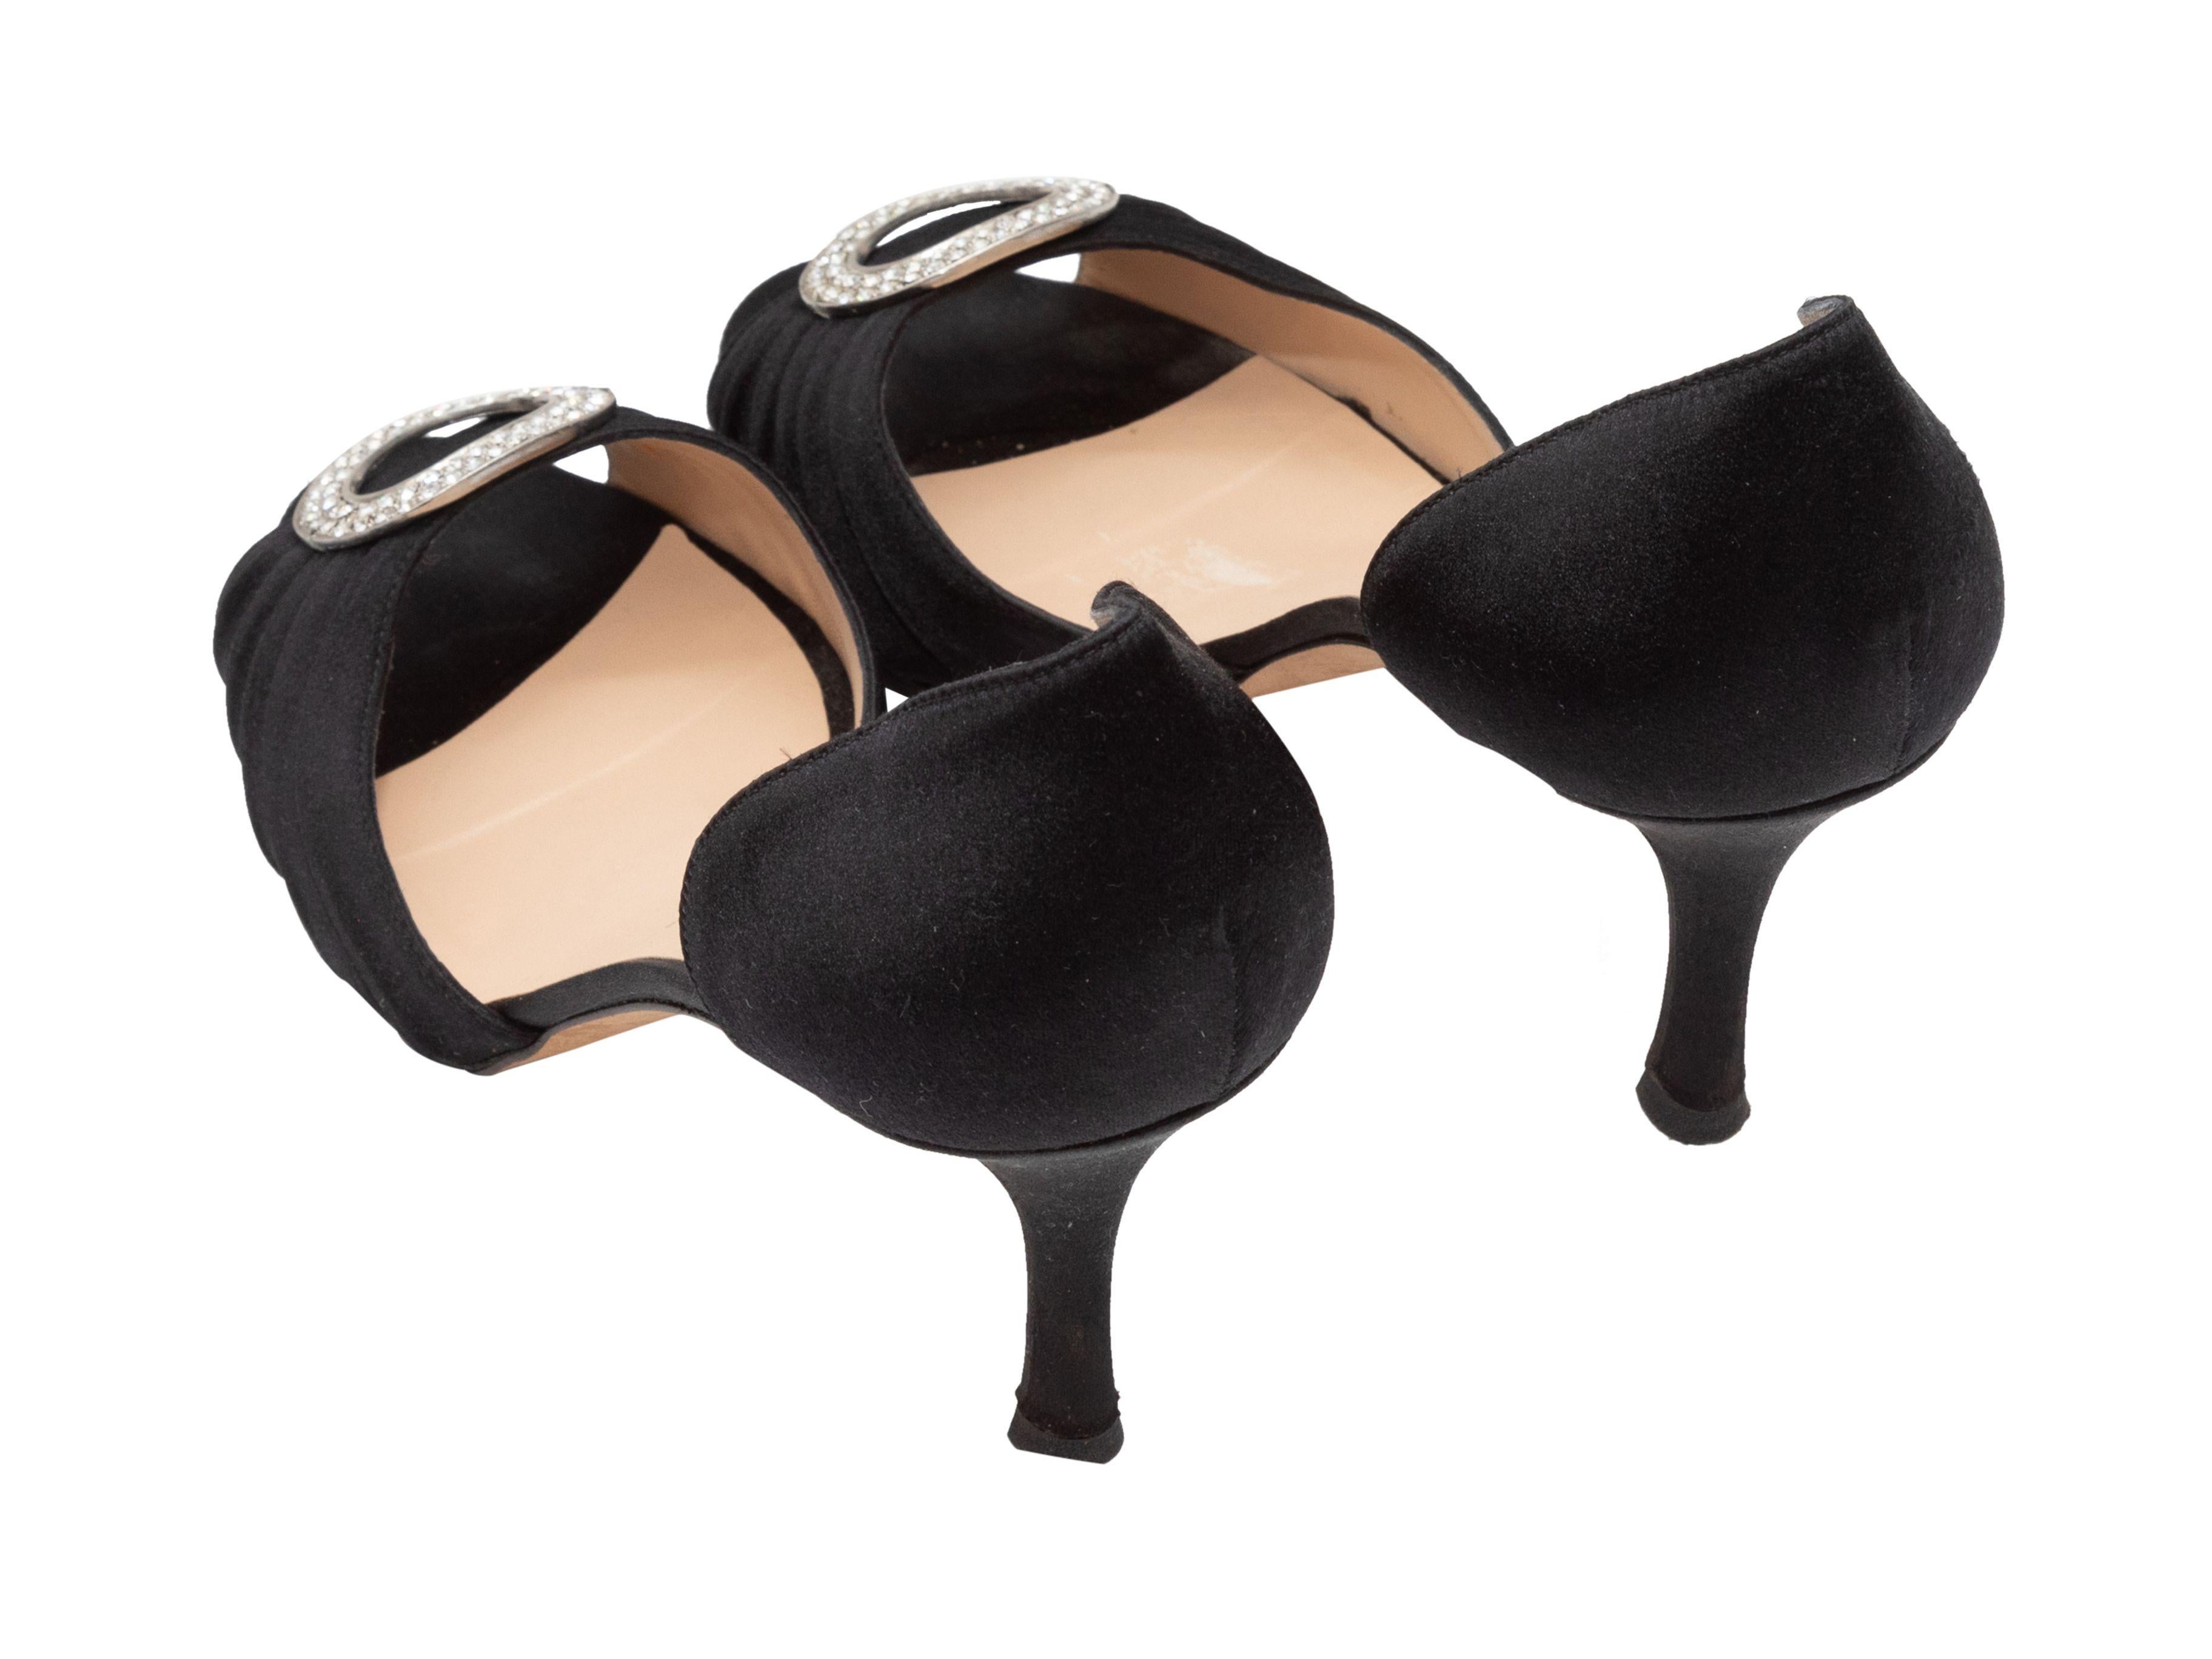  Manolo Blahnik Chaussures à talons d'Orsay à bout ouvert et ornements noirs Pour femmes 